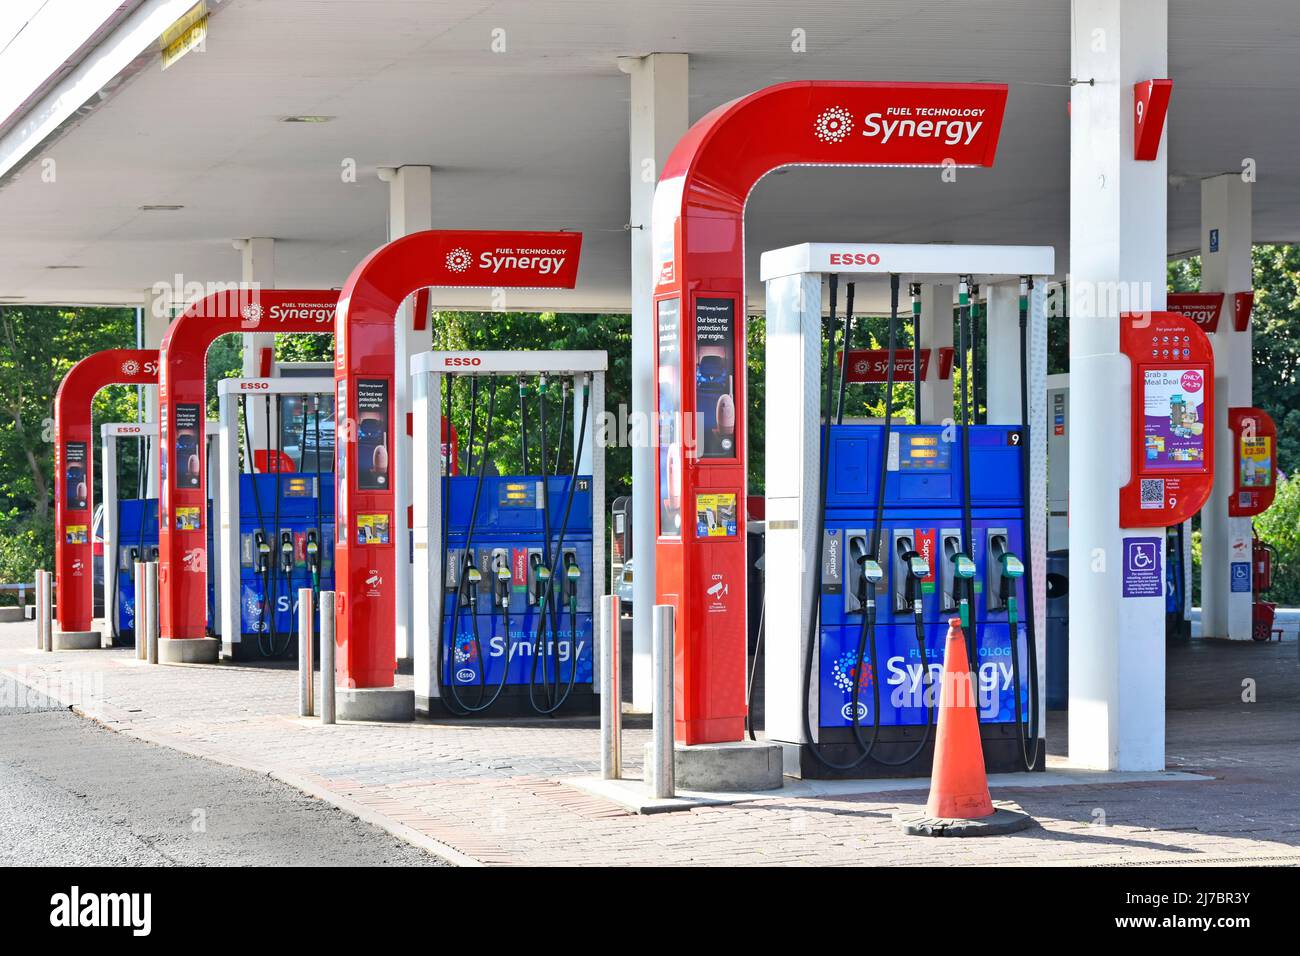 Rangée de quatre pompes de remplissage de carburant diesel à essence de marque Esso Synergy double face à choix multiple dans la zone de la station-service d'autoroute Essex, Angleterre, Royaume-Uni Banque D'Images